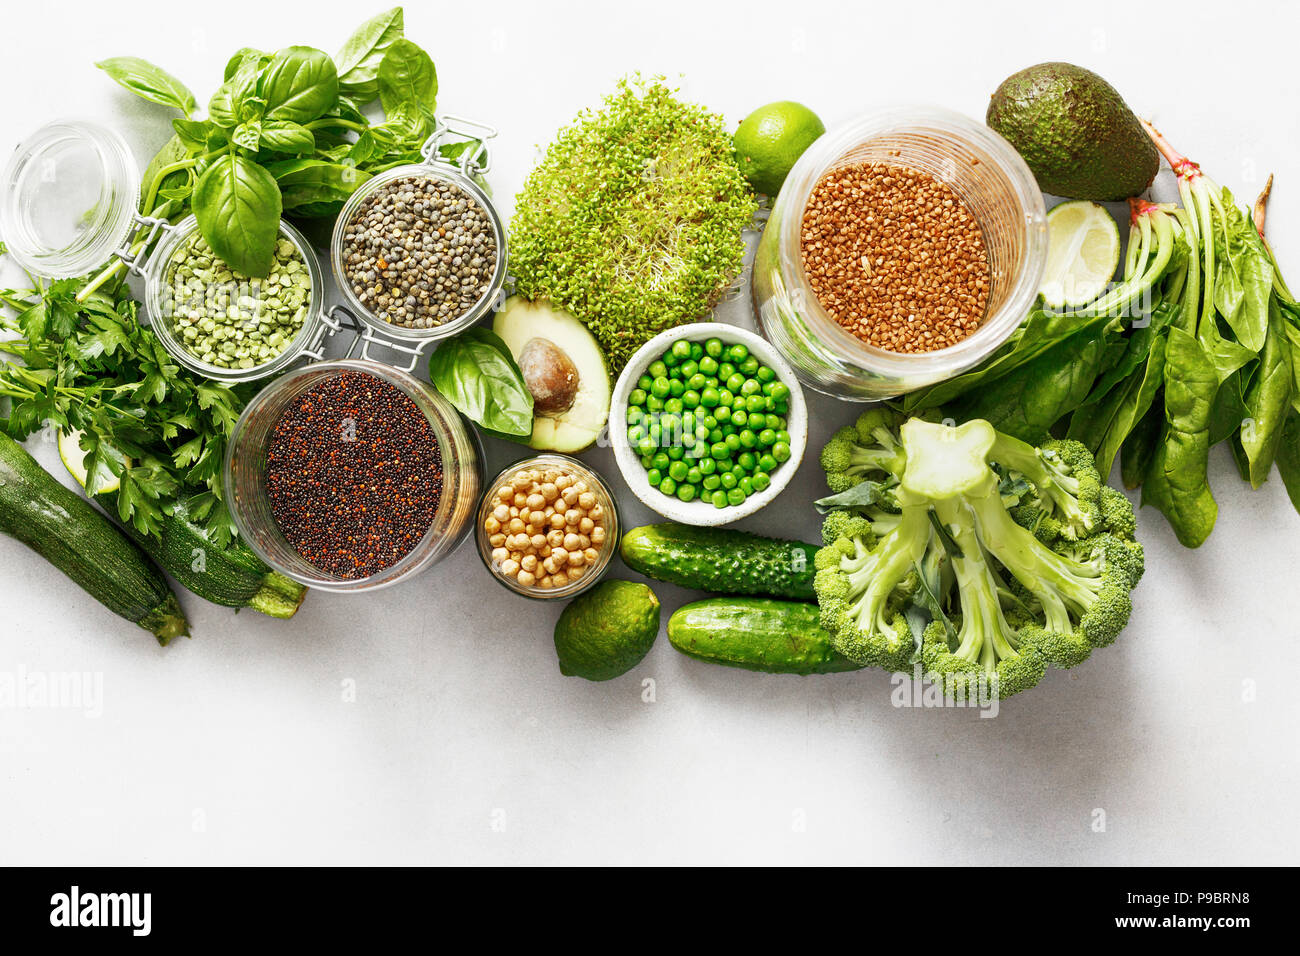 Raw Set Gemüse und Getreideprodukte Eiweißquelle für Vegetarier: Gurke,  Luzern, Zucchini, Spinat, Basilikum, grüne Erbsen, Avocado, Brokkoli, l  Stockfotografie - Alamy